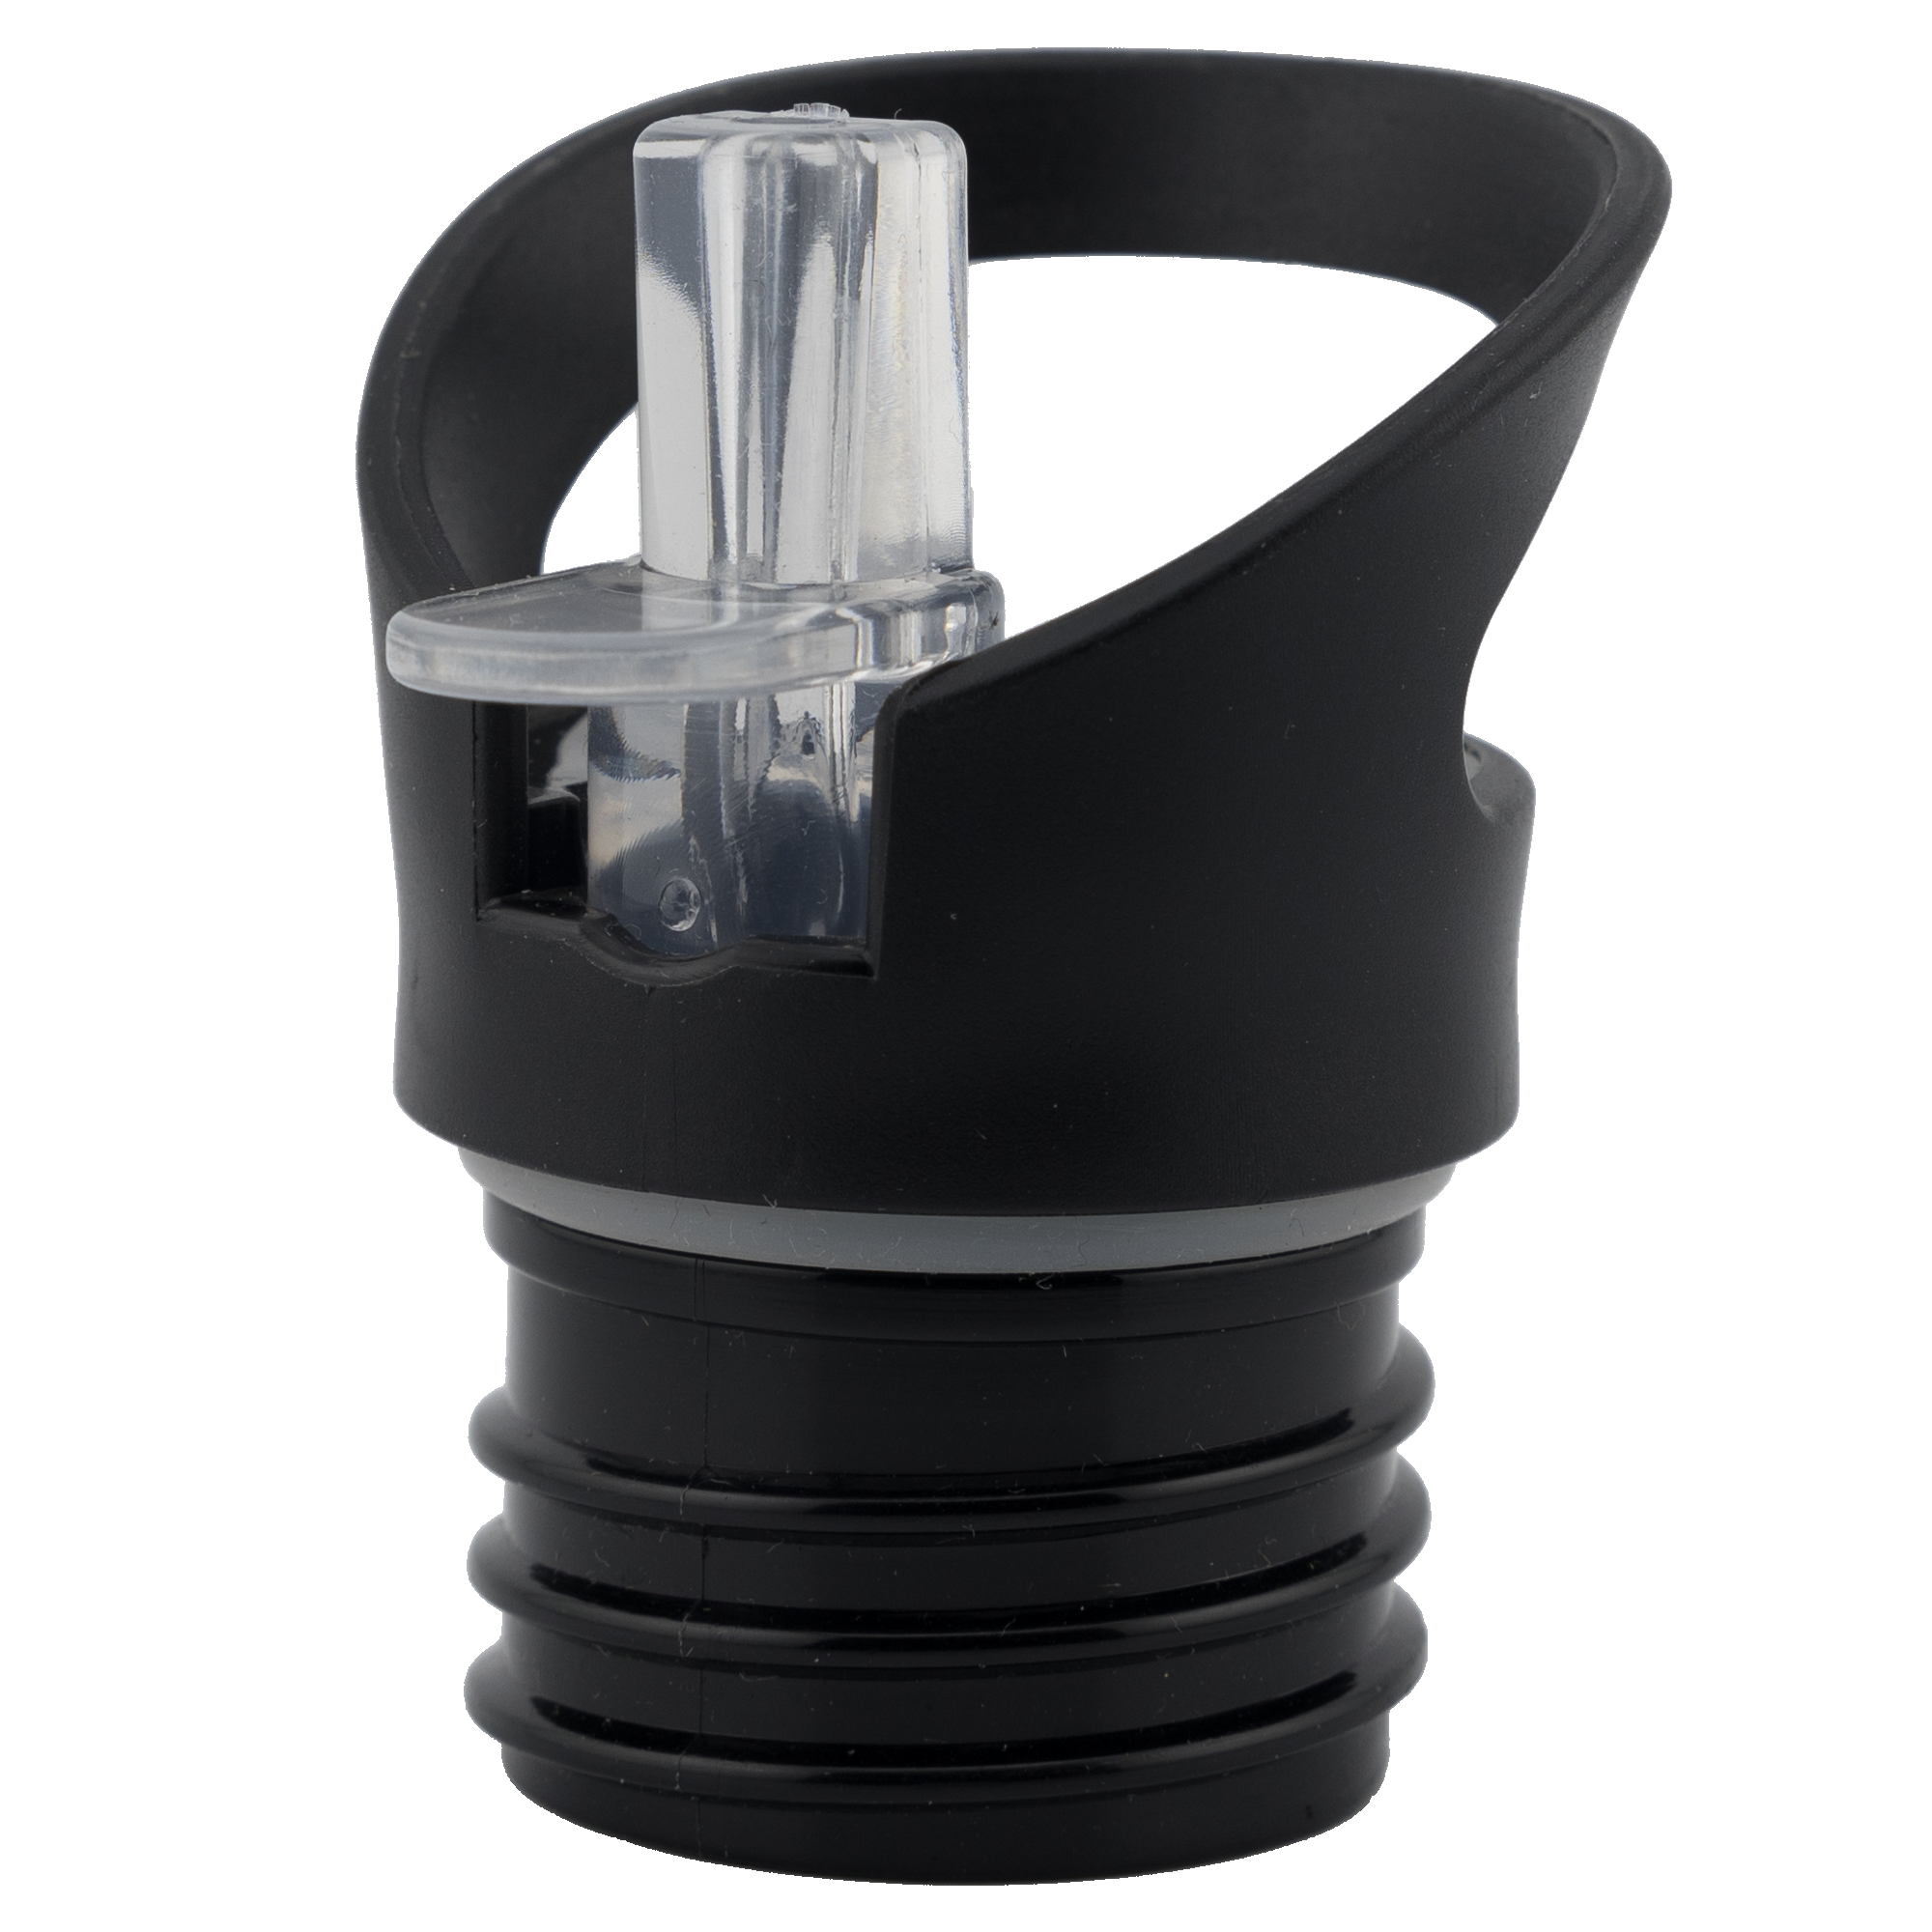 Trinkaufsatz mit Strohhalm für Edelstahltrinkflaschen - Durchmesser 4,5cm - schwarz